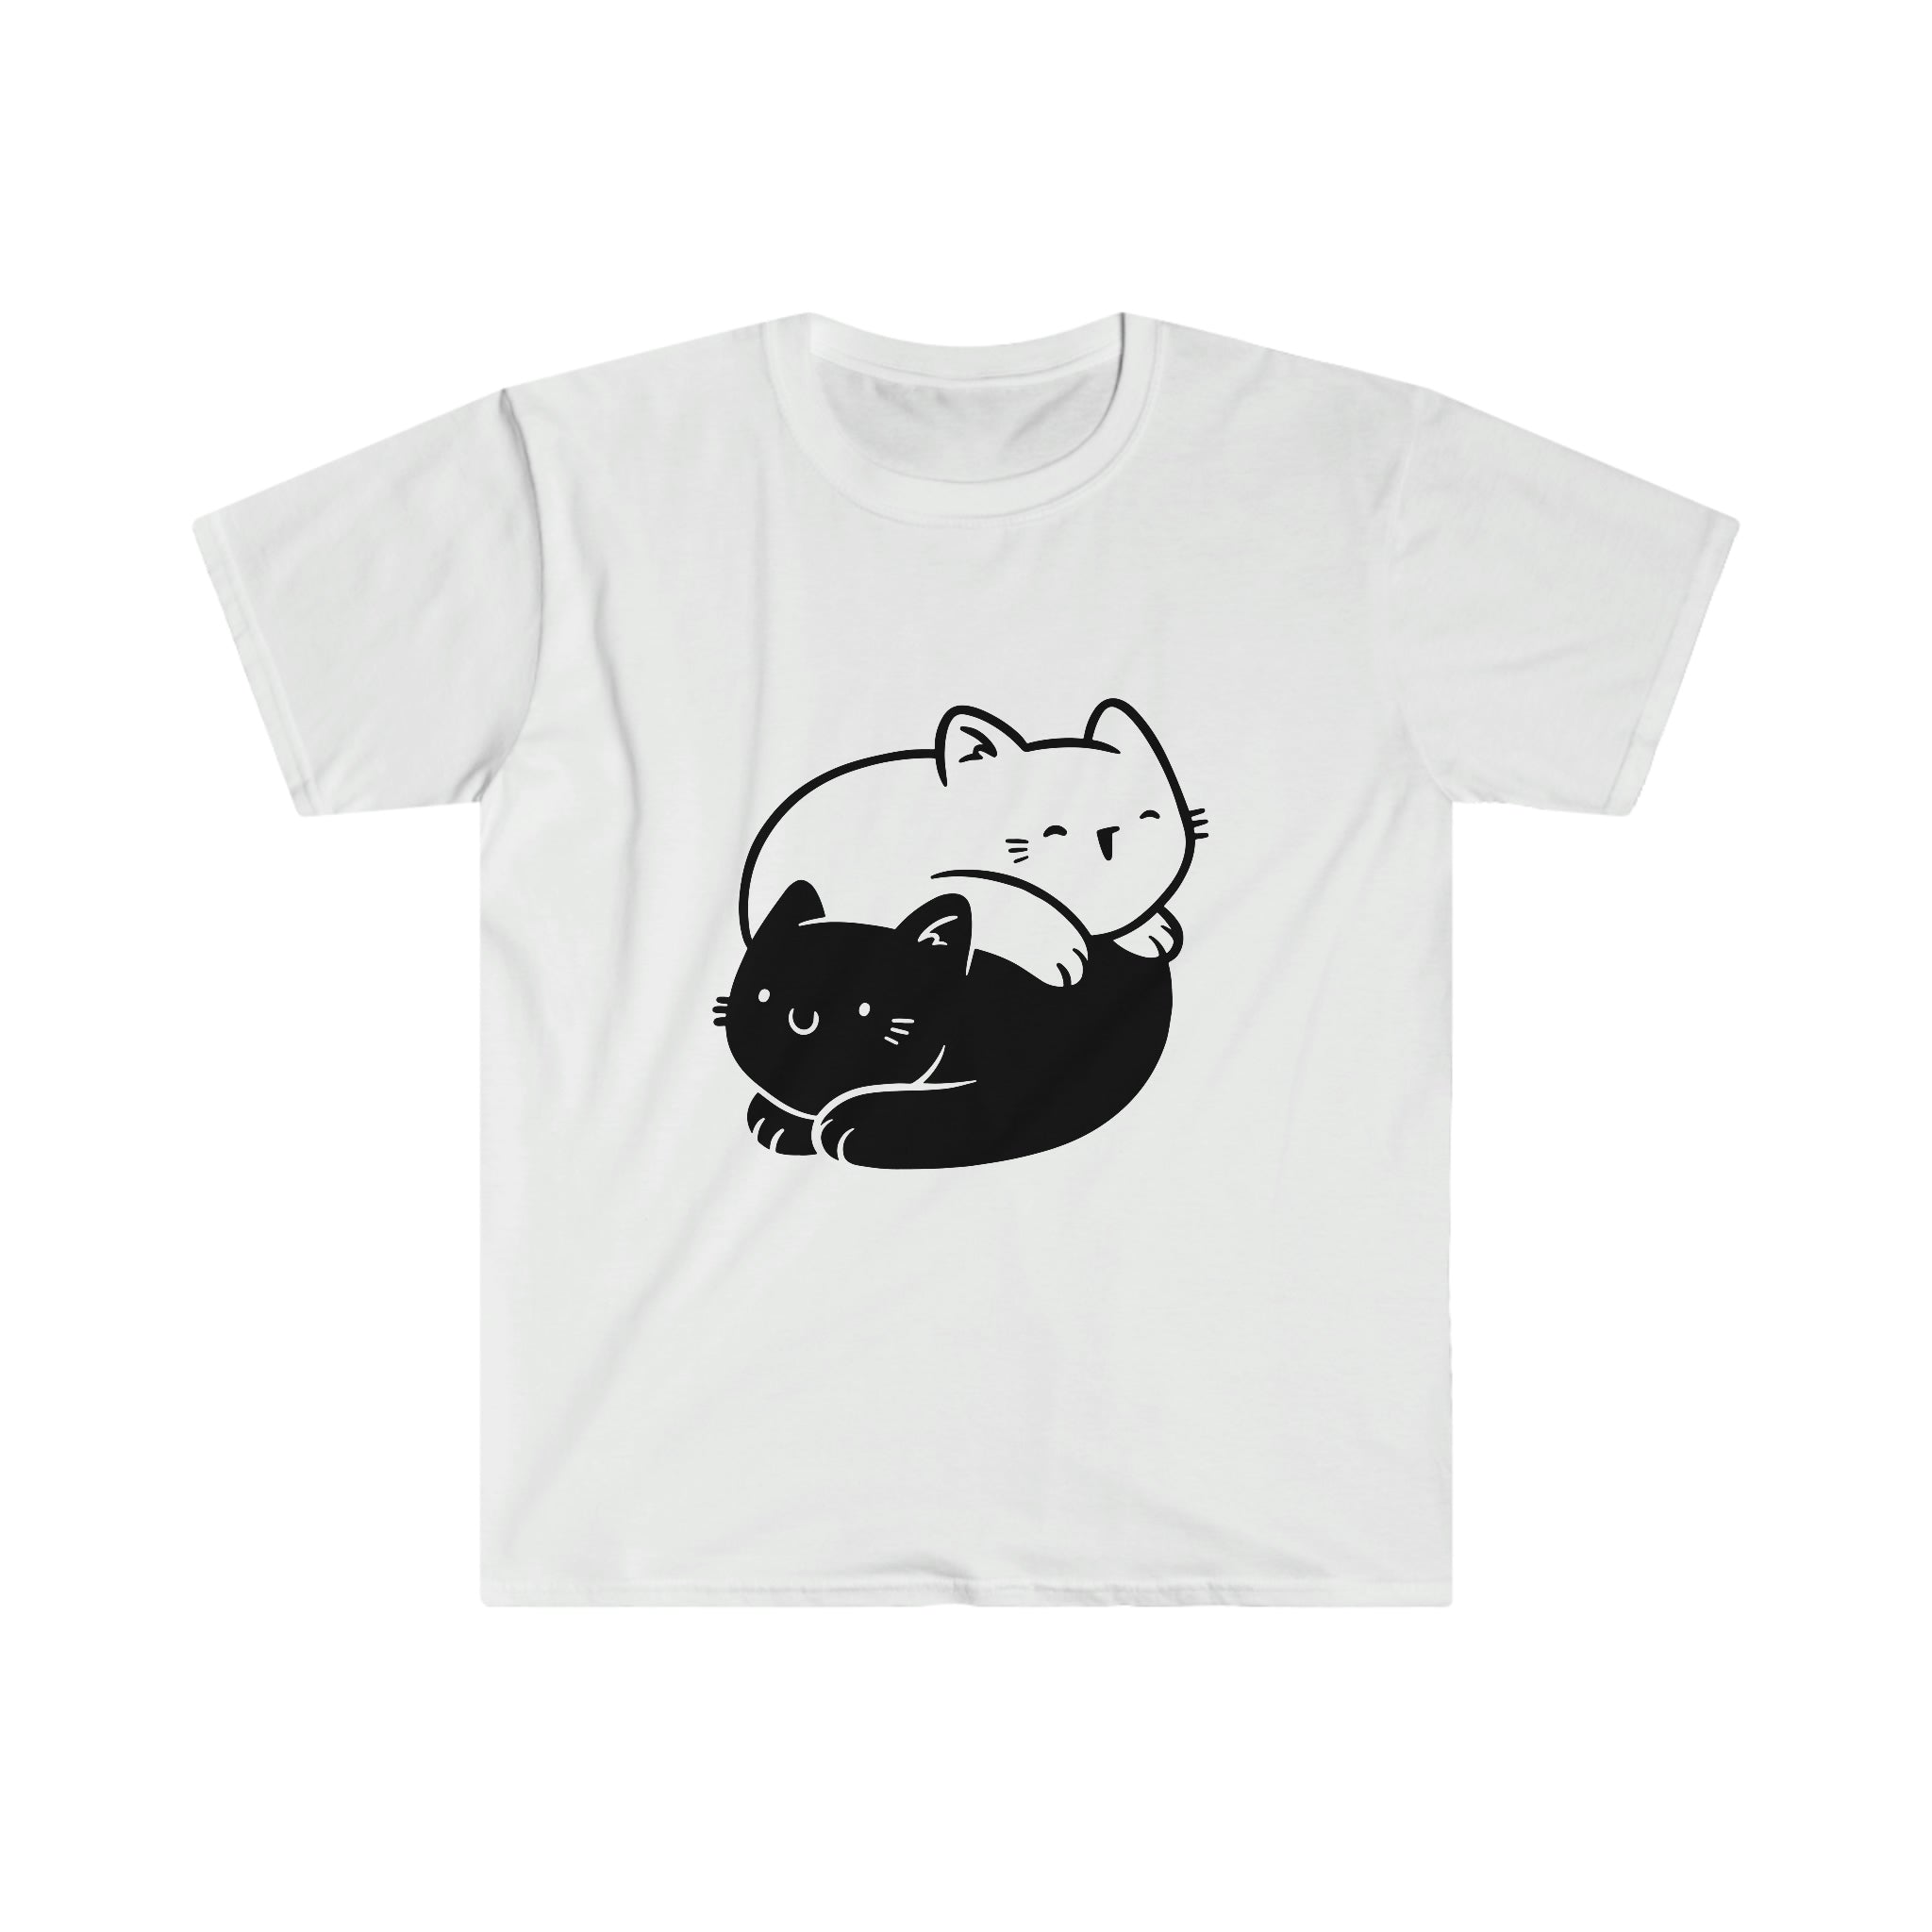 Ying Young Cats T-Shirt